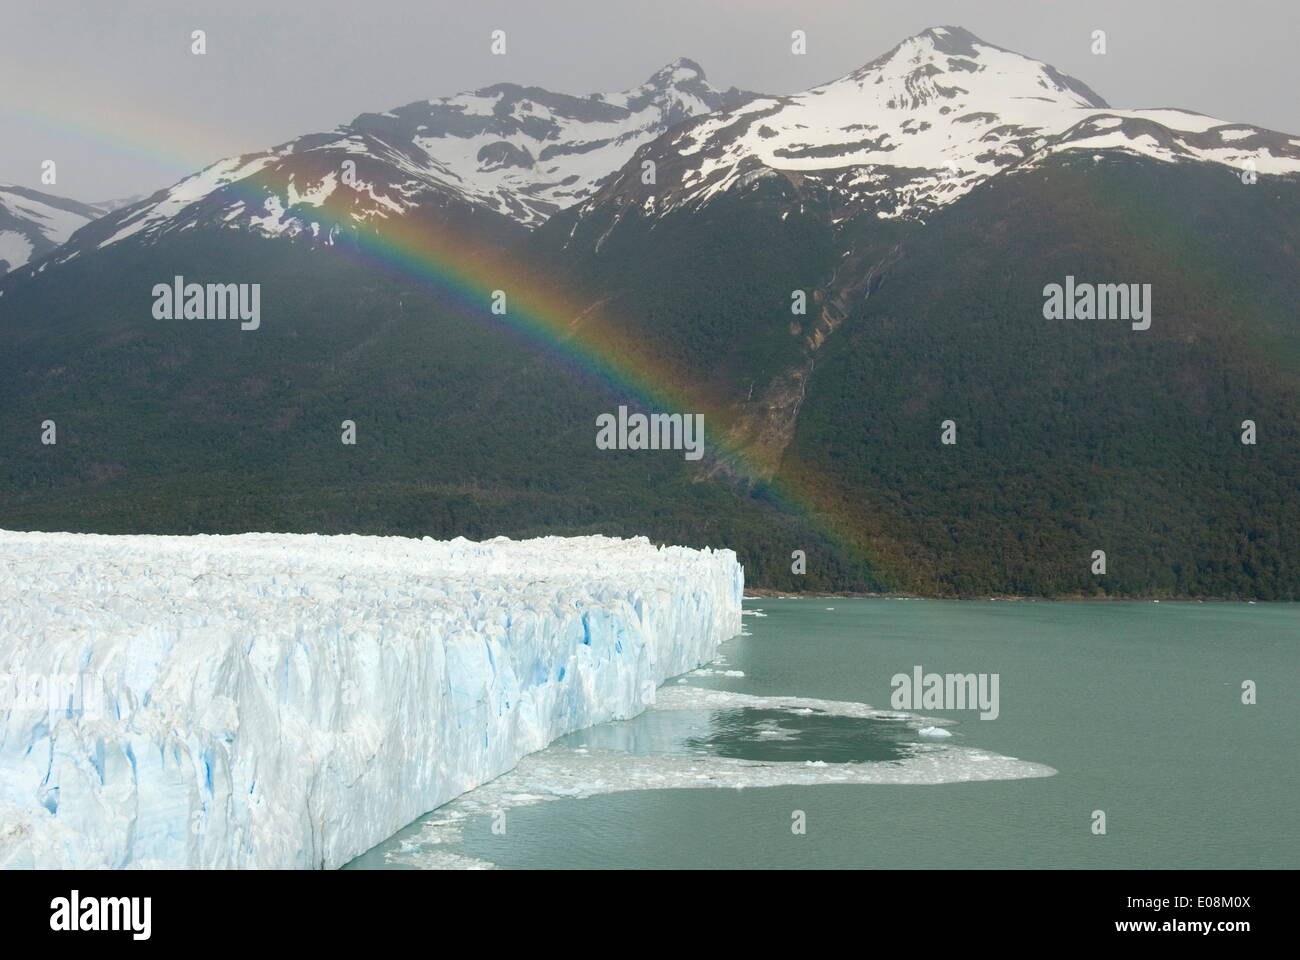 Glaciar Perito Moreno (Perito Moreno Glacier), Lago Argentino, Los Glaciares National Park, UNESCO World Heritage Site, Patagonia, Argentina, South America Stock Photo